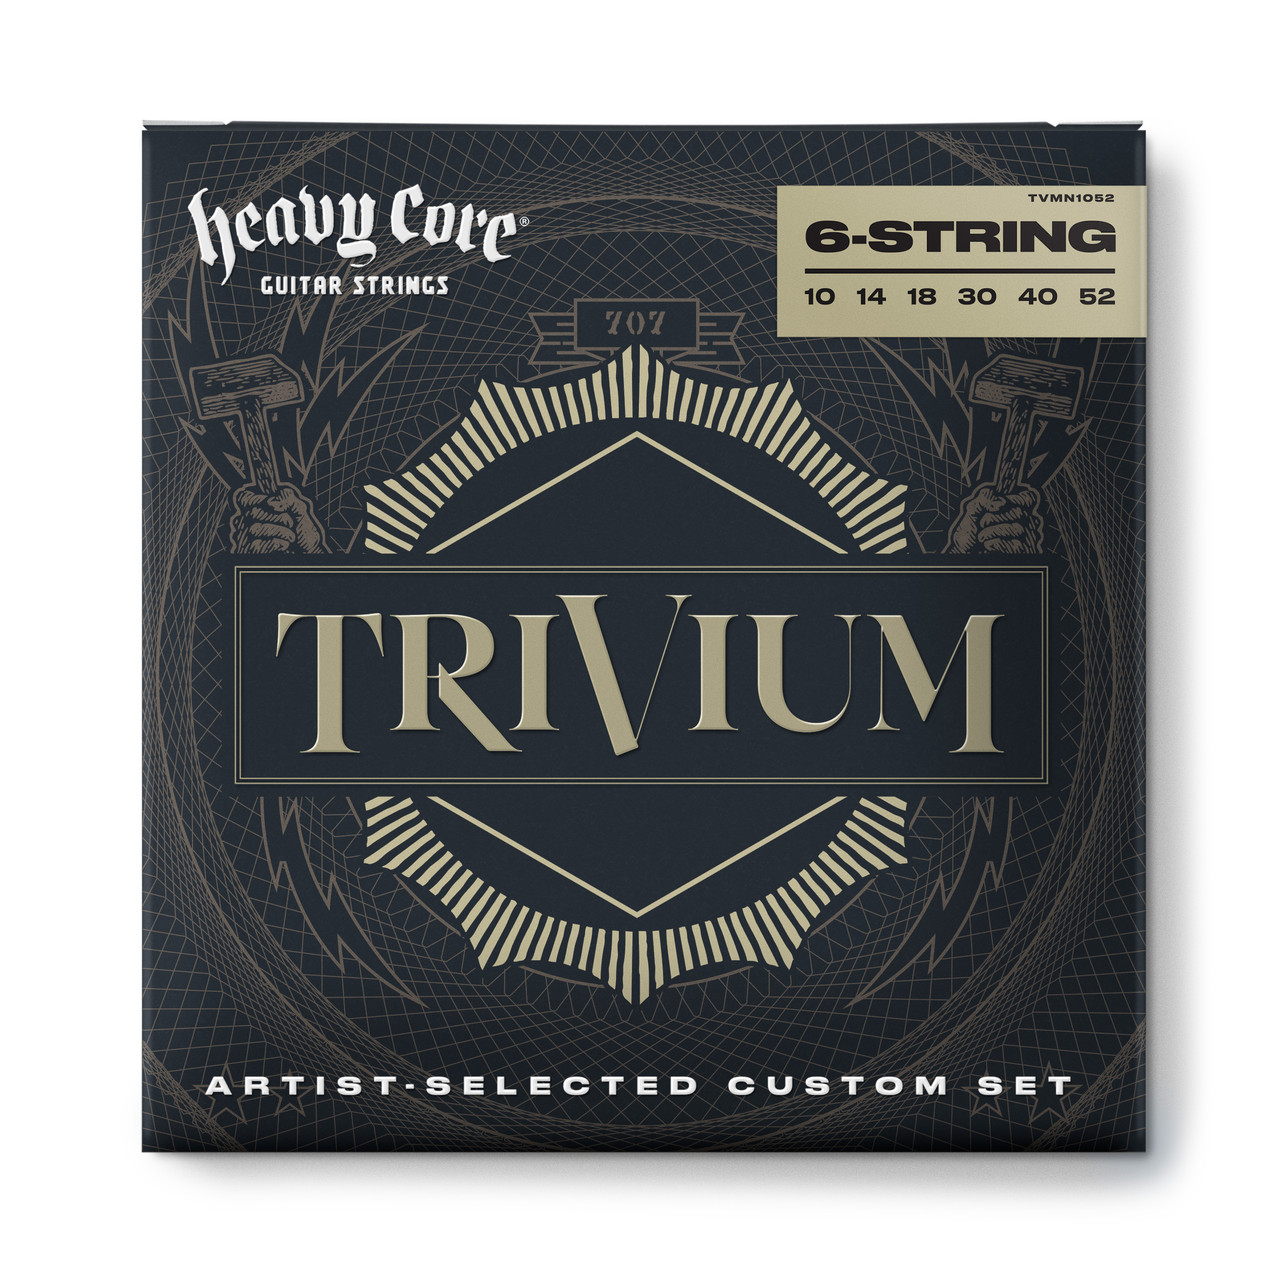 TRIVIUM SIGNATURE GUITAR STRINGS 10-52